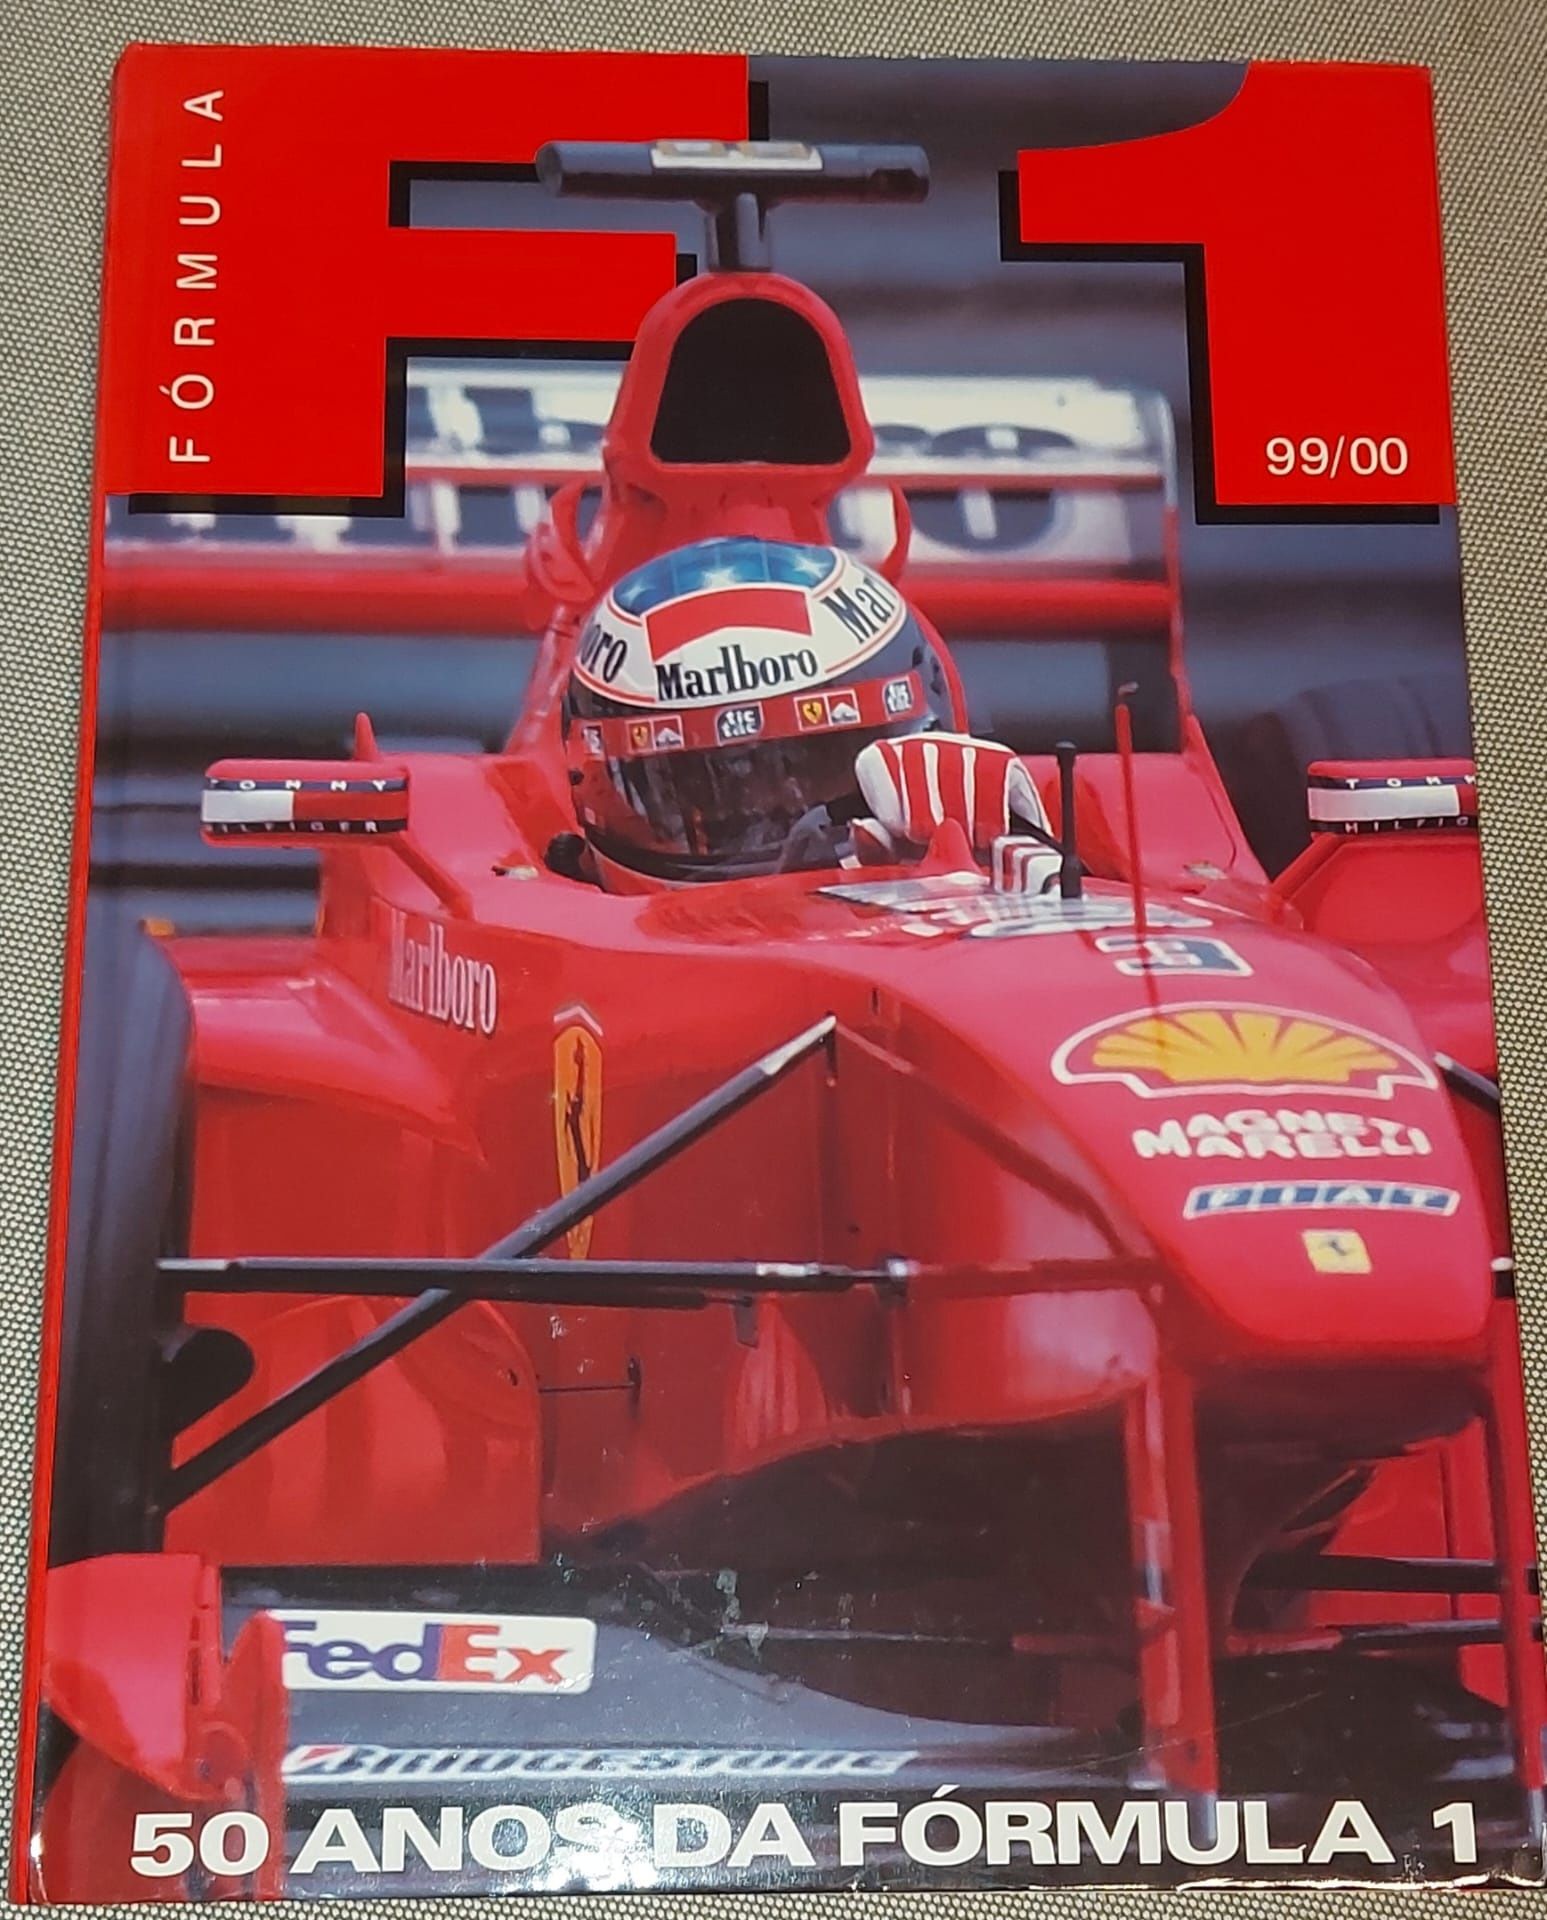 Livro: fórmula 1, época 1999/2000